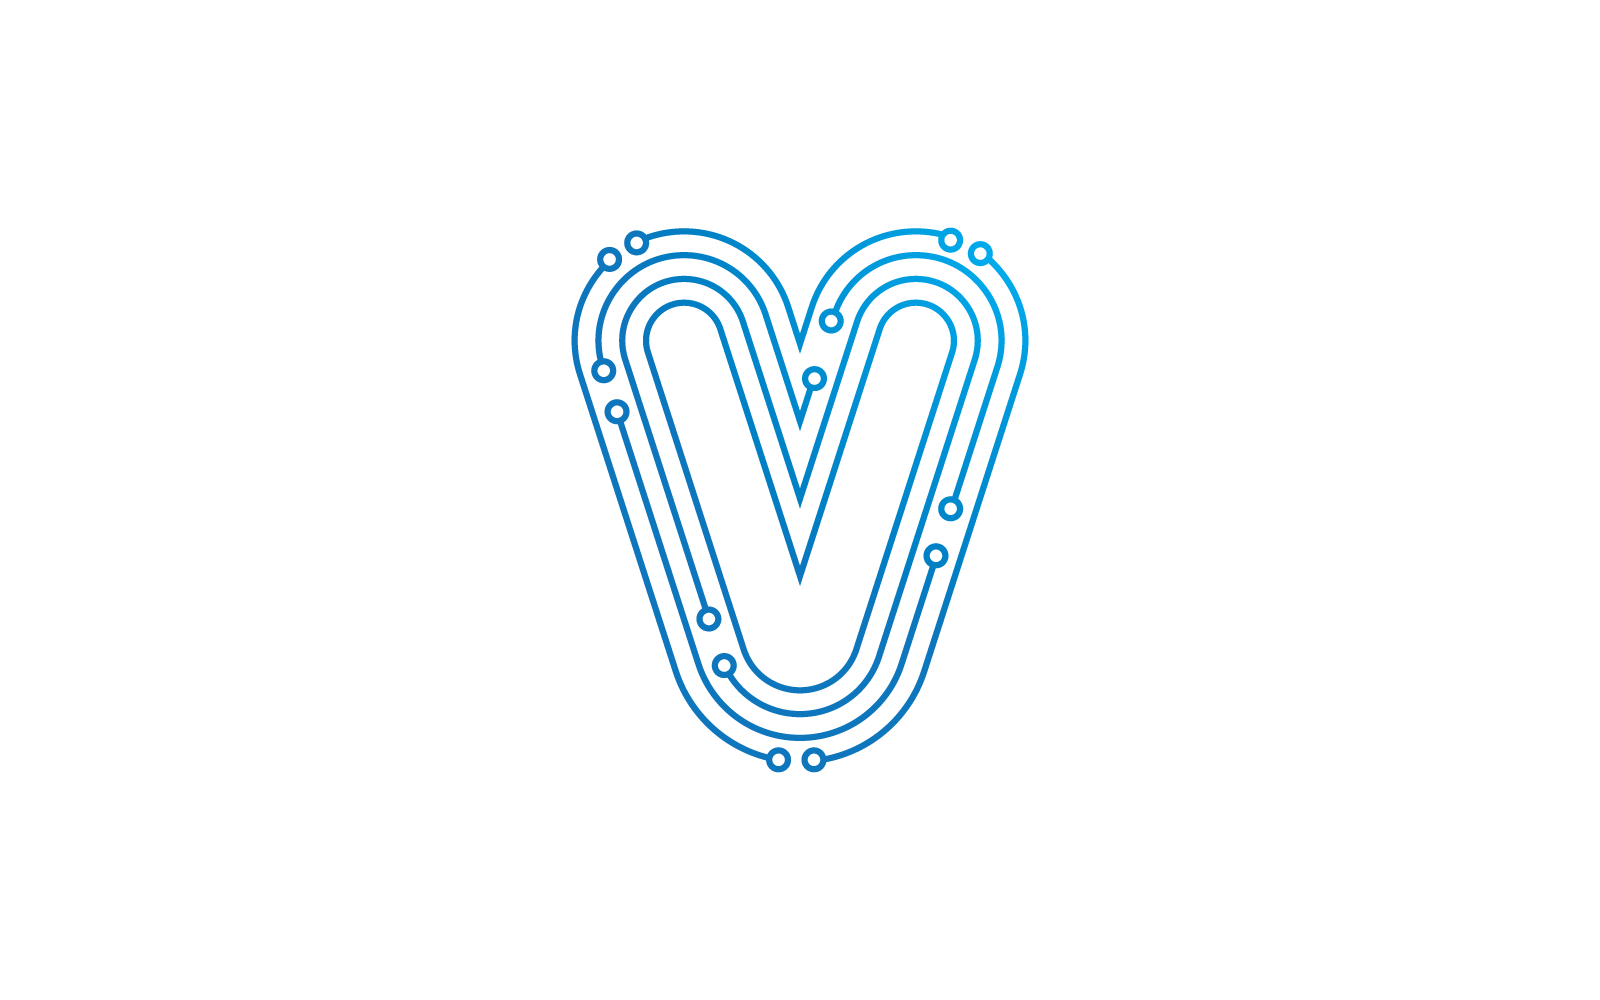 V ilk harfi Devre teknolojisi illüstrasyon logo vektör şablonu